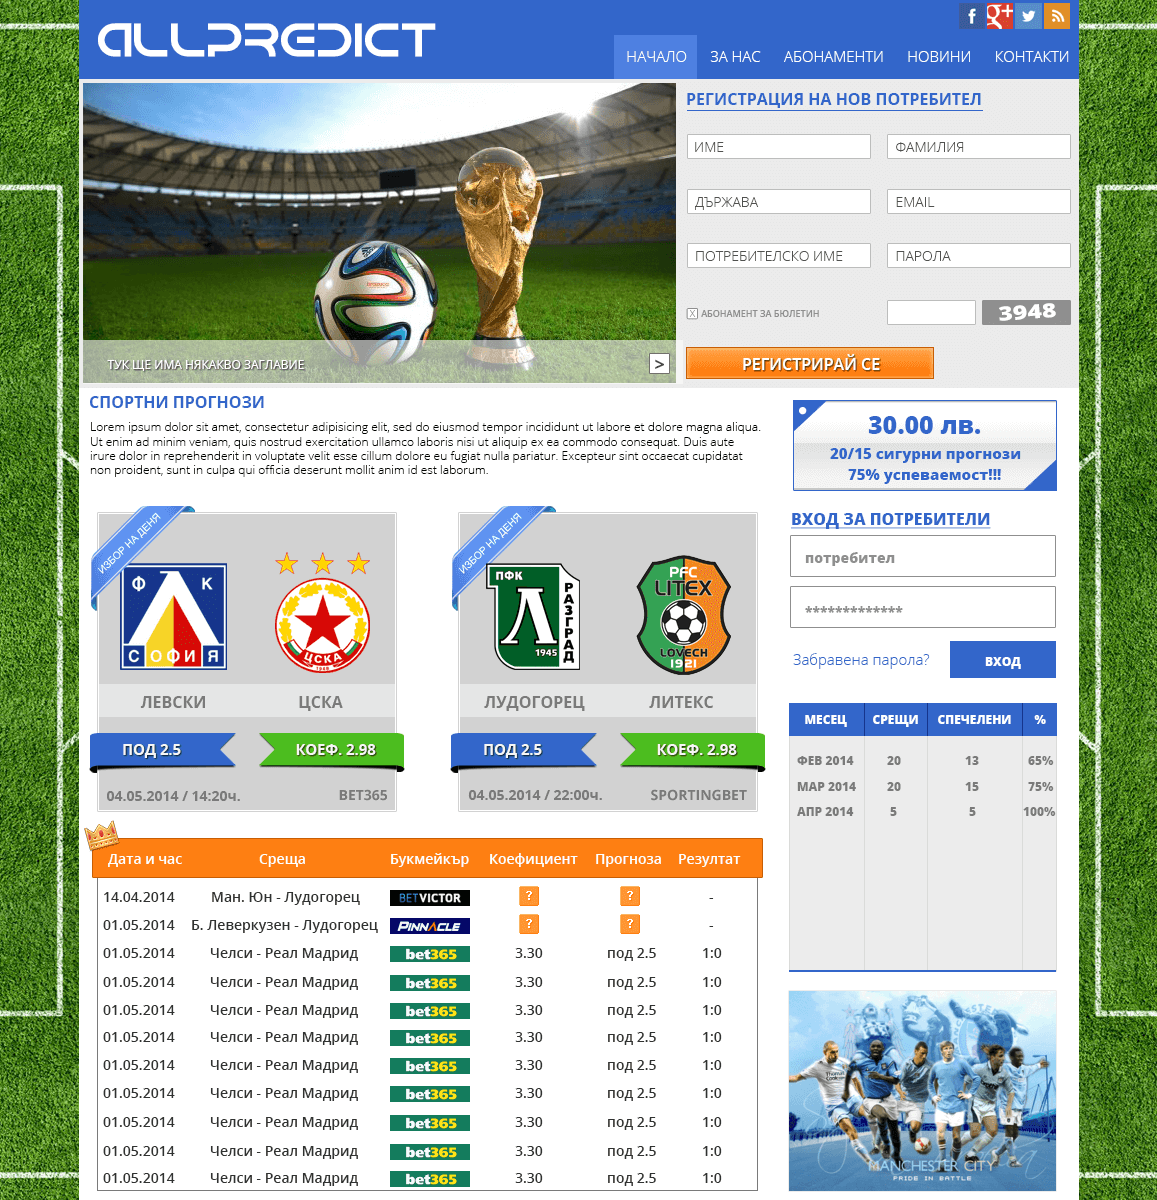 Изработка на уеб сайт за спортни прогнози - Allpredict